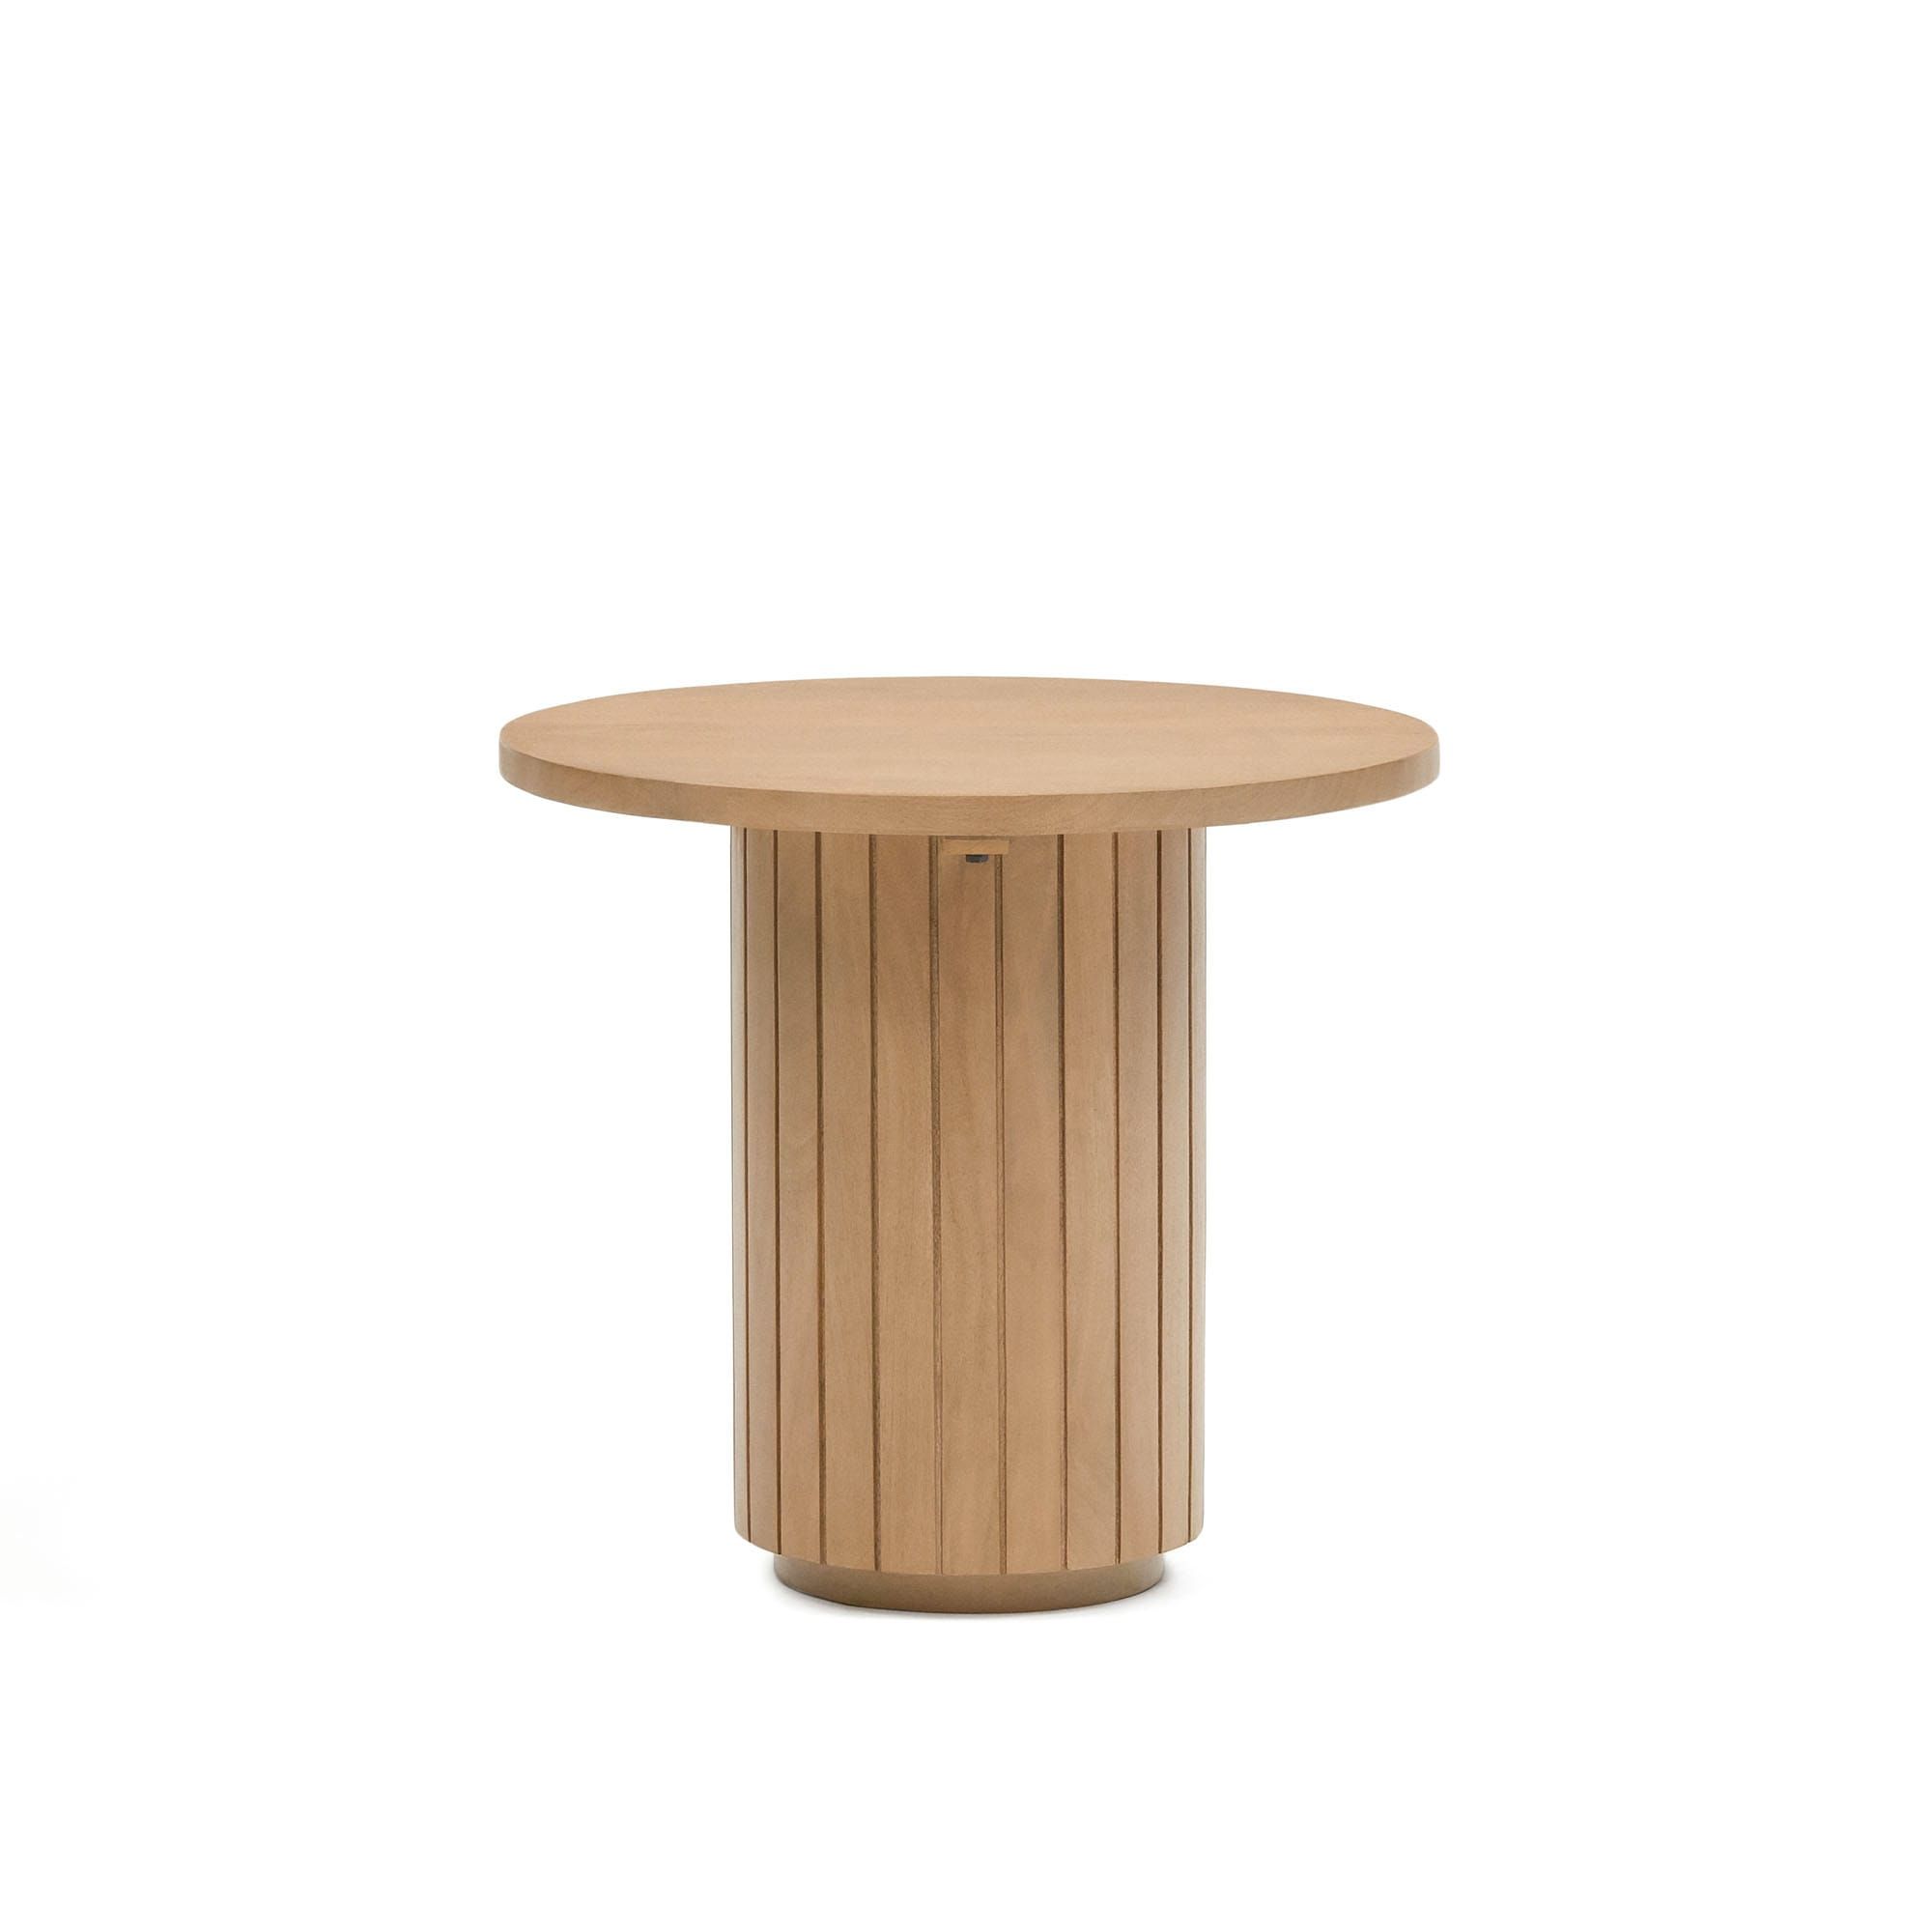 Licia Круглый столик из массива дерева манго Ø 60 см Licia